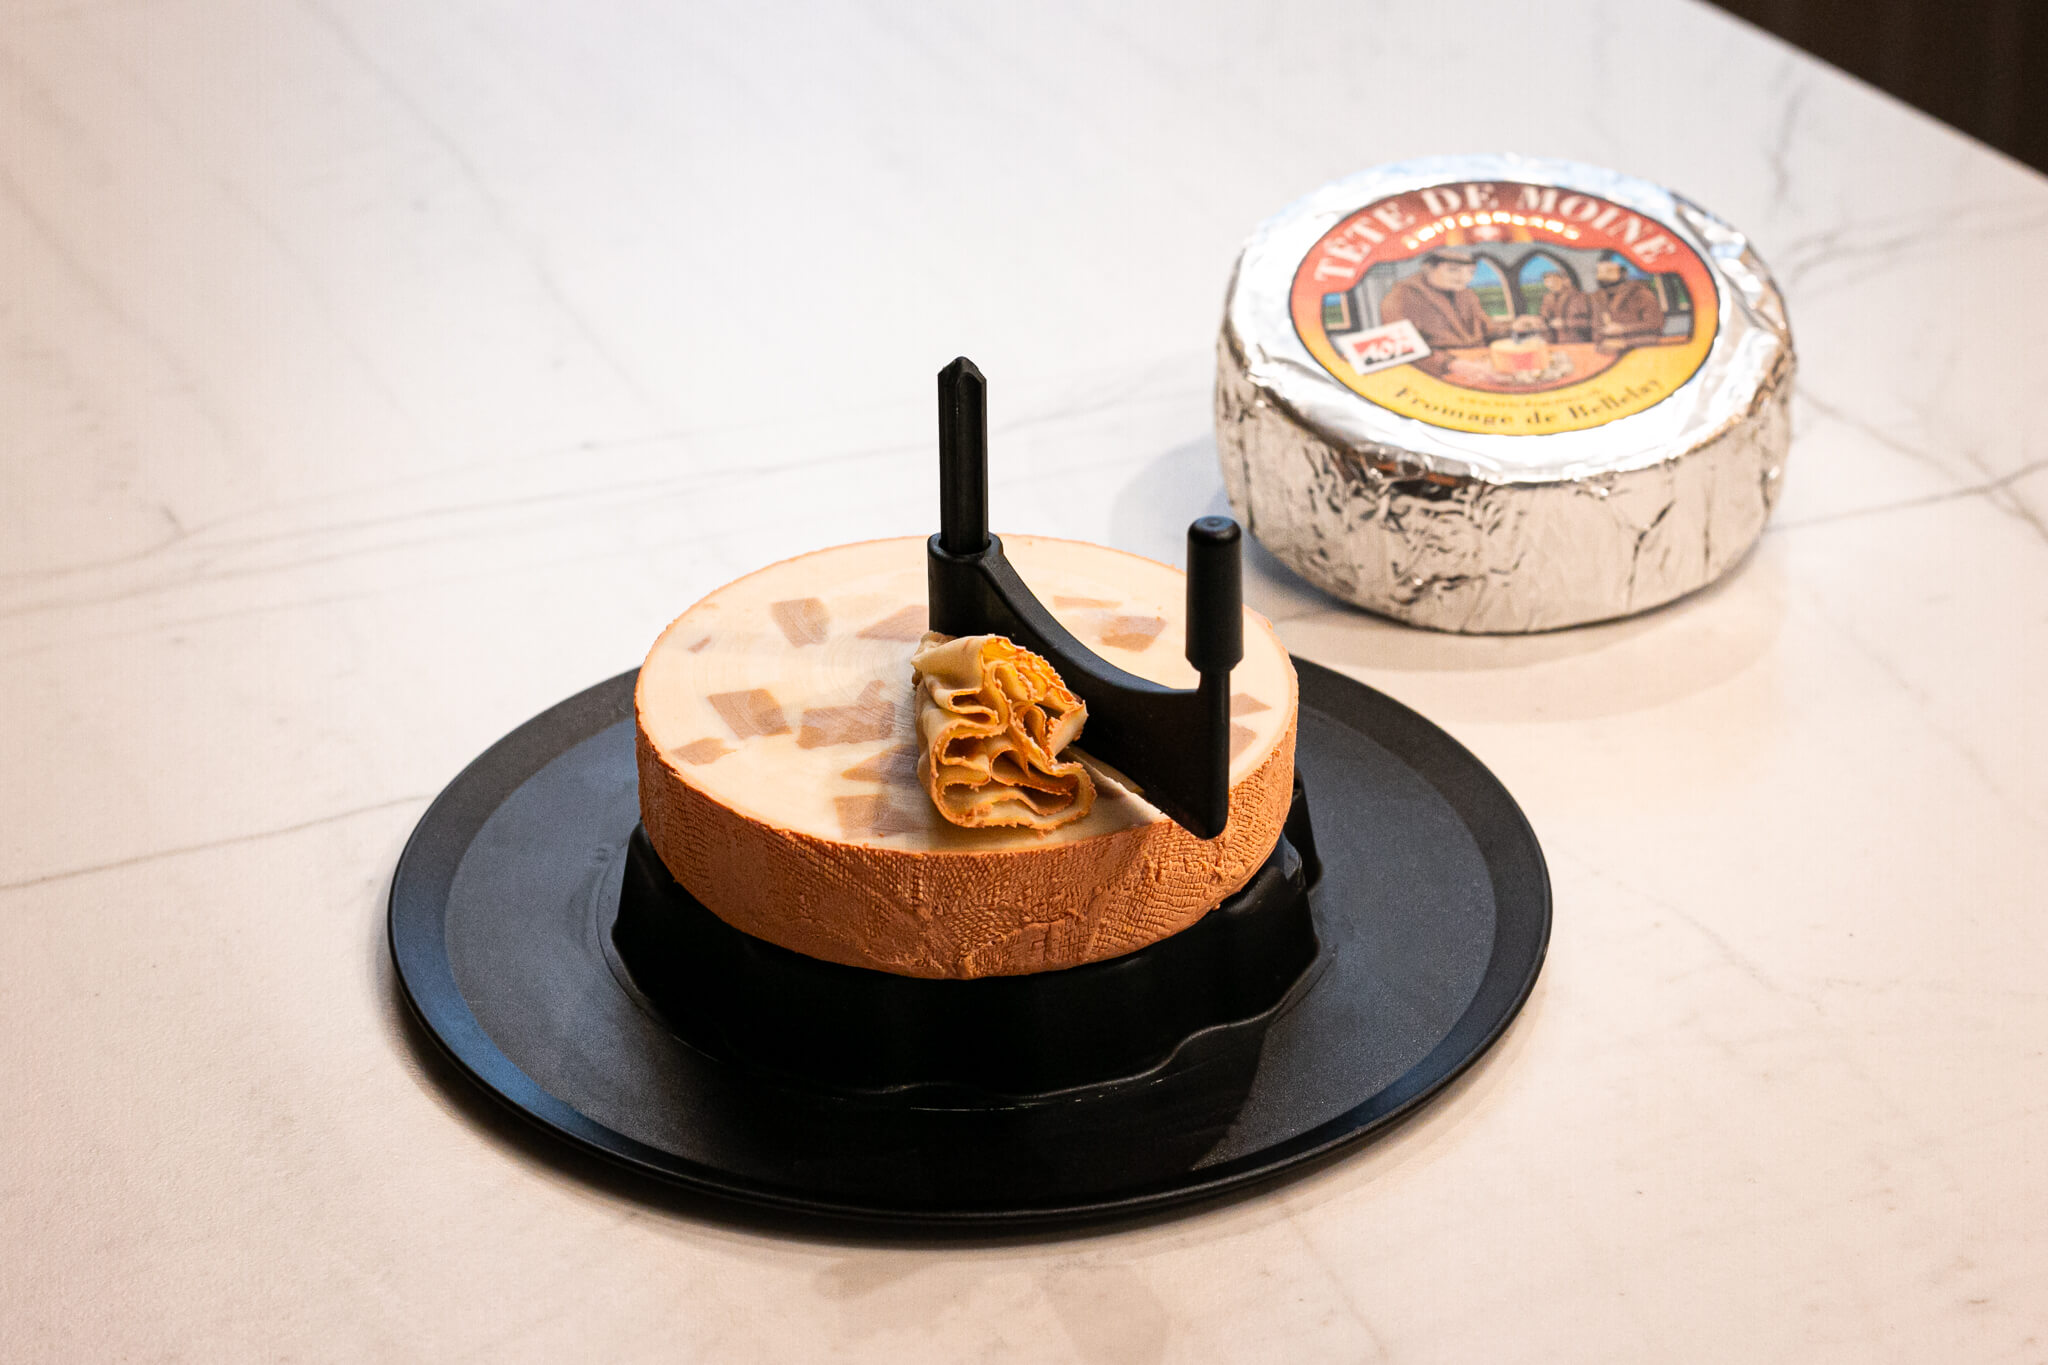 El turrón de Tête de Moine de Jon Cake elaborado por I+Desserts © Jairon Garcia